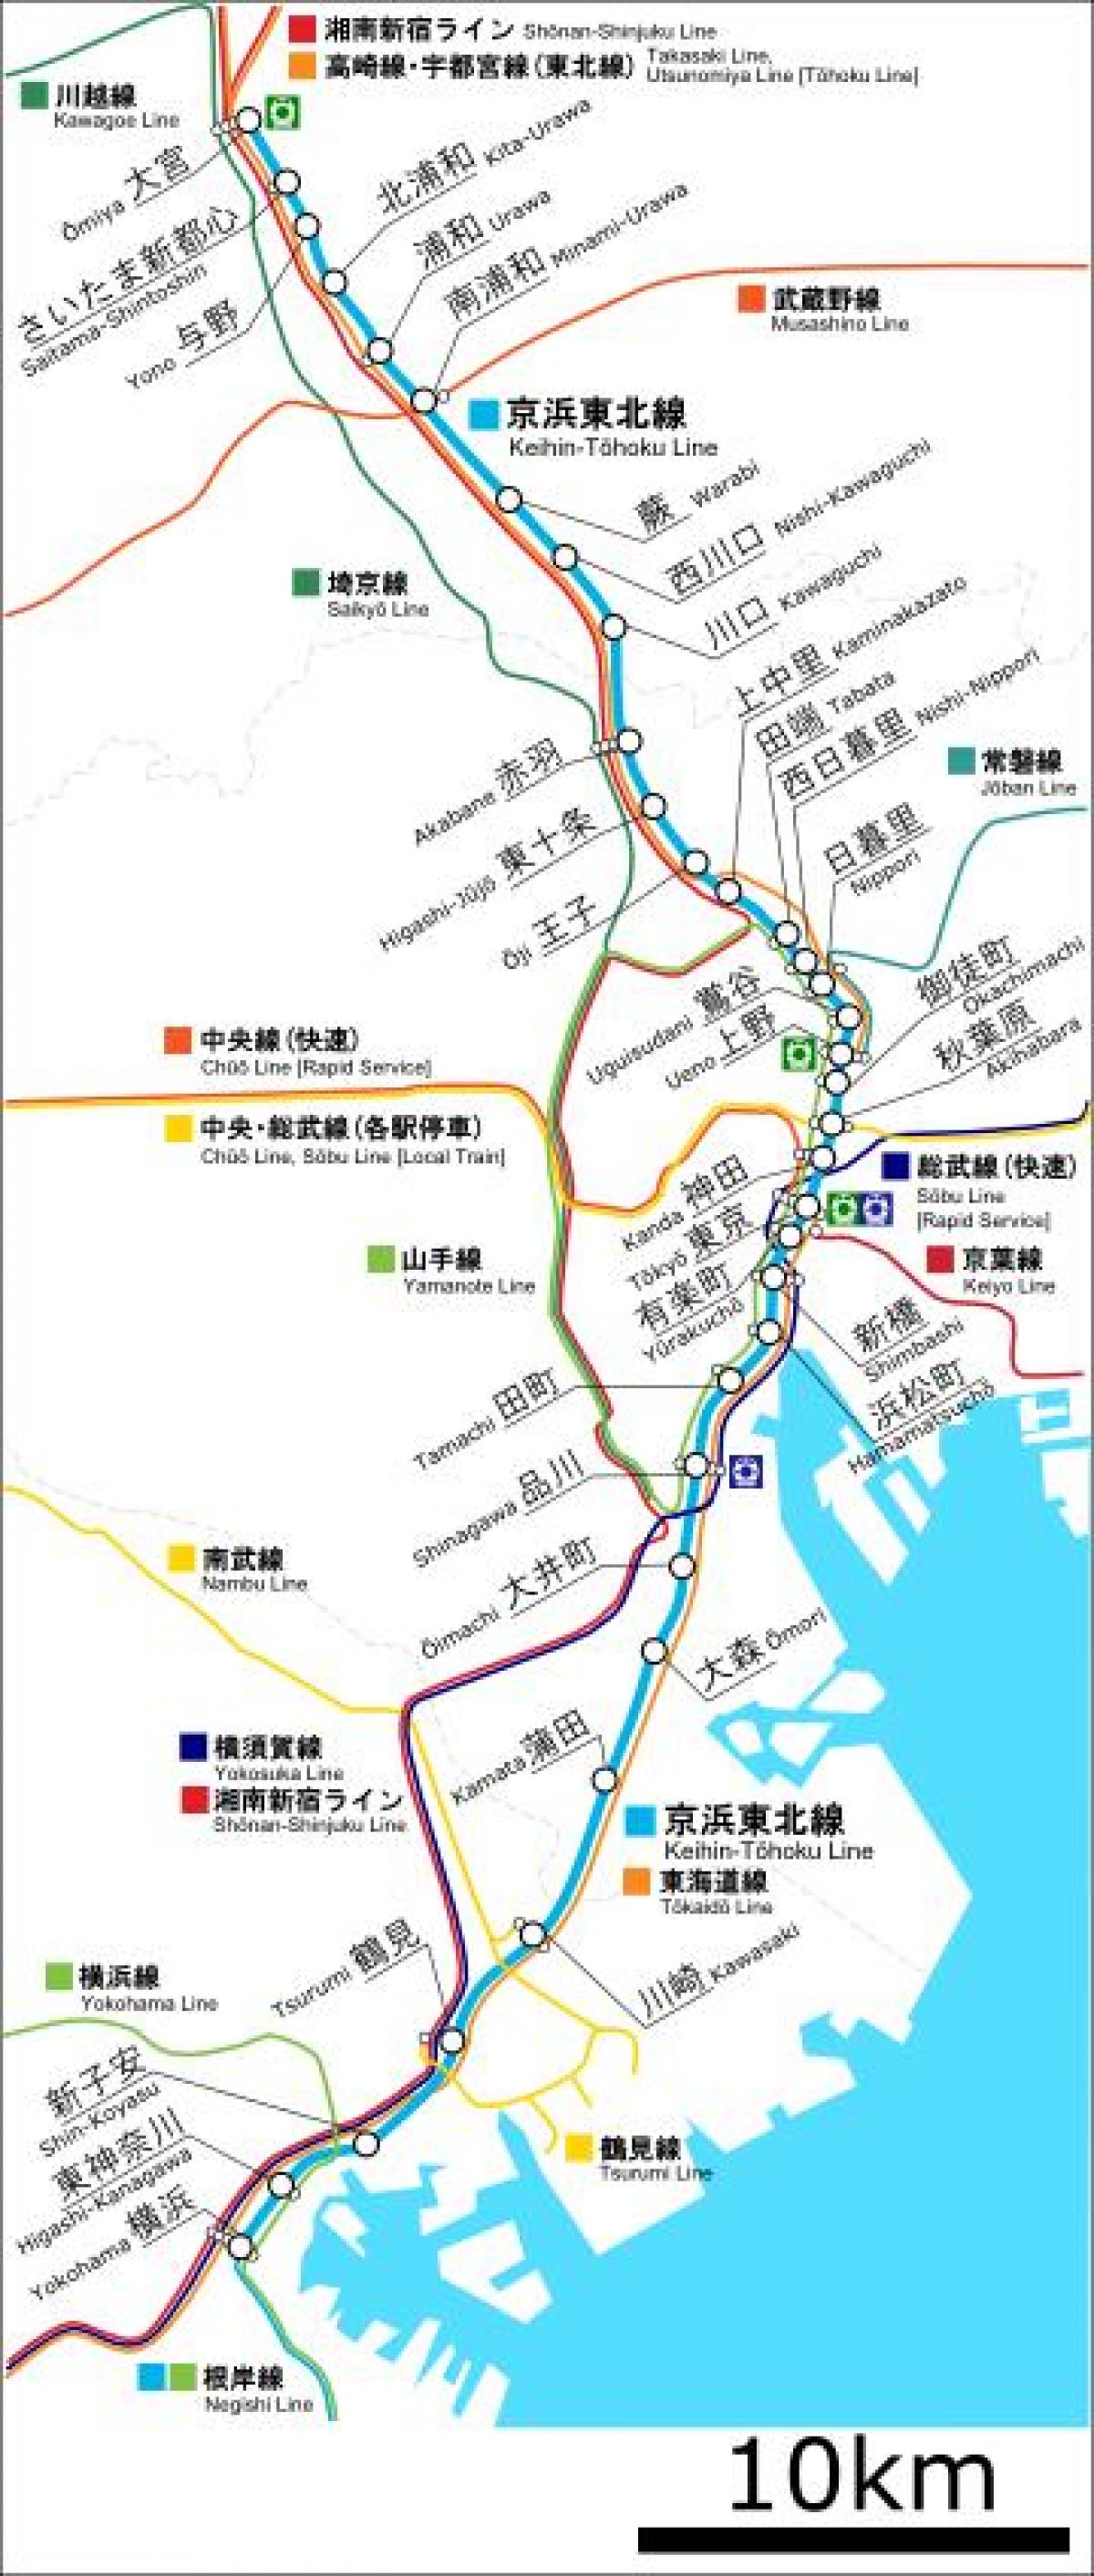 kaart van Keihin tohoku lijn